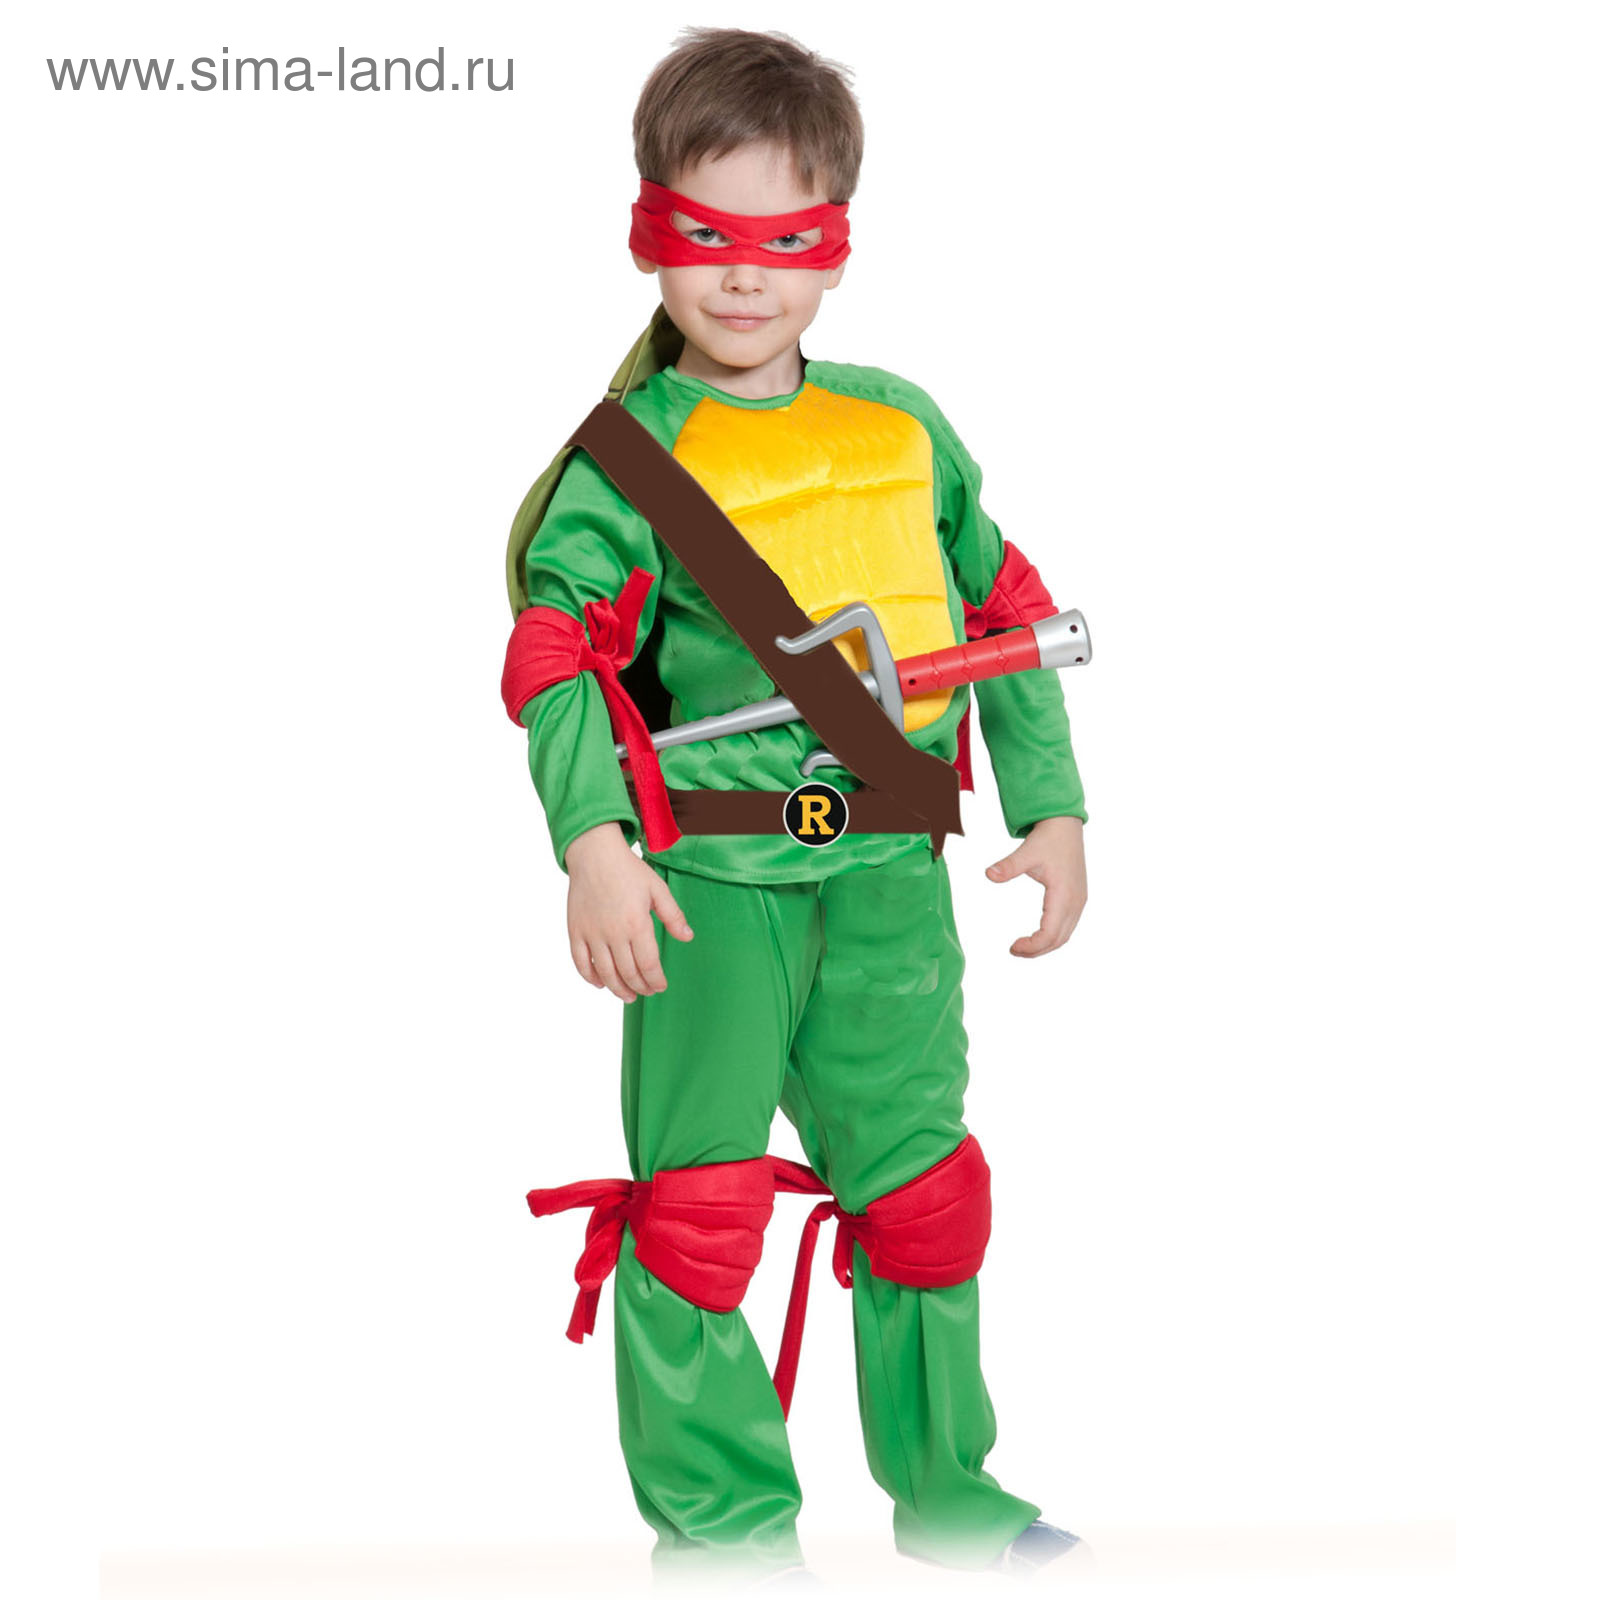 карнавальный костюм черепашка - ниндзя на 5-6 лет